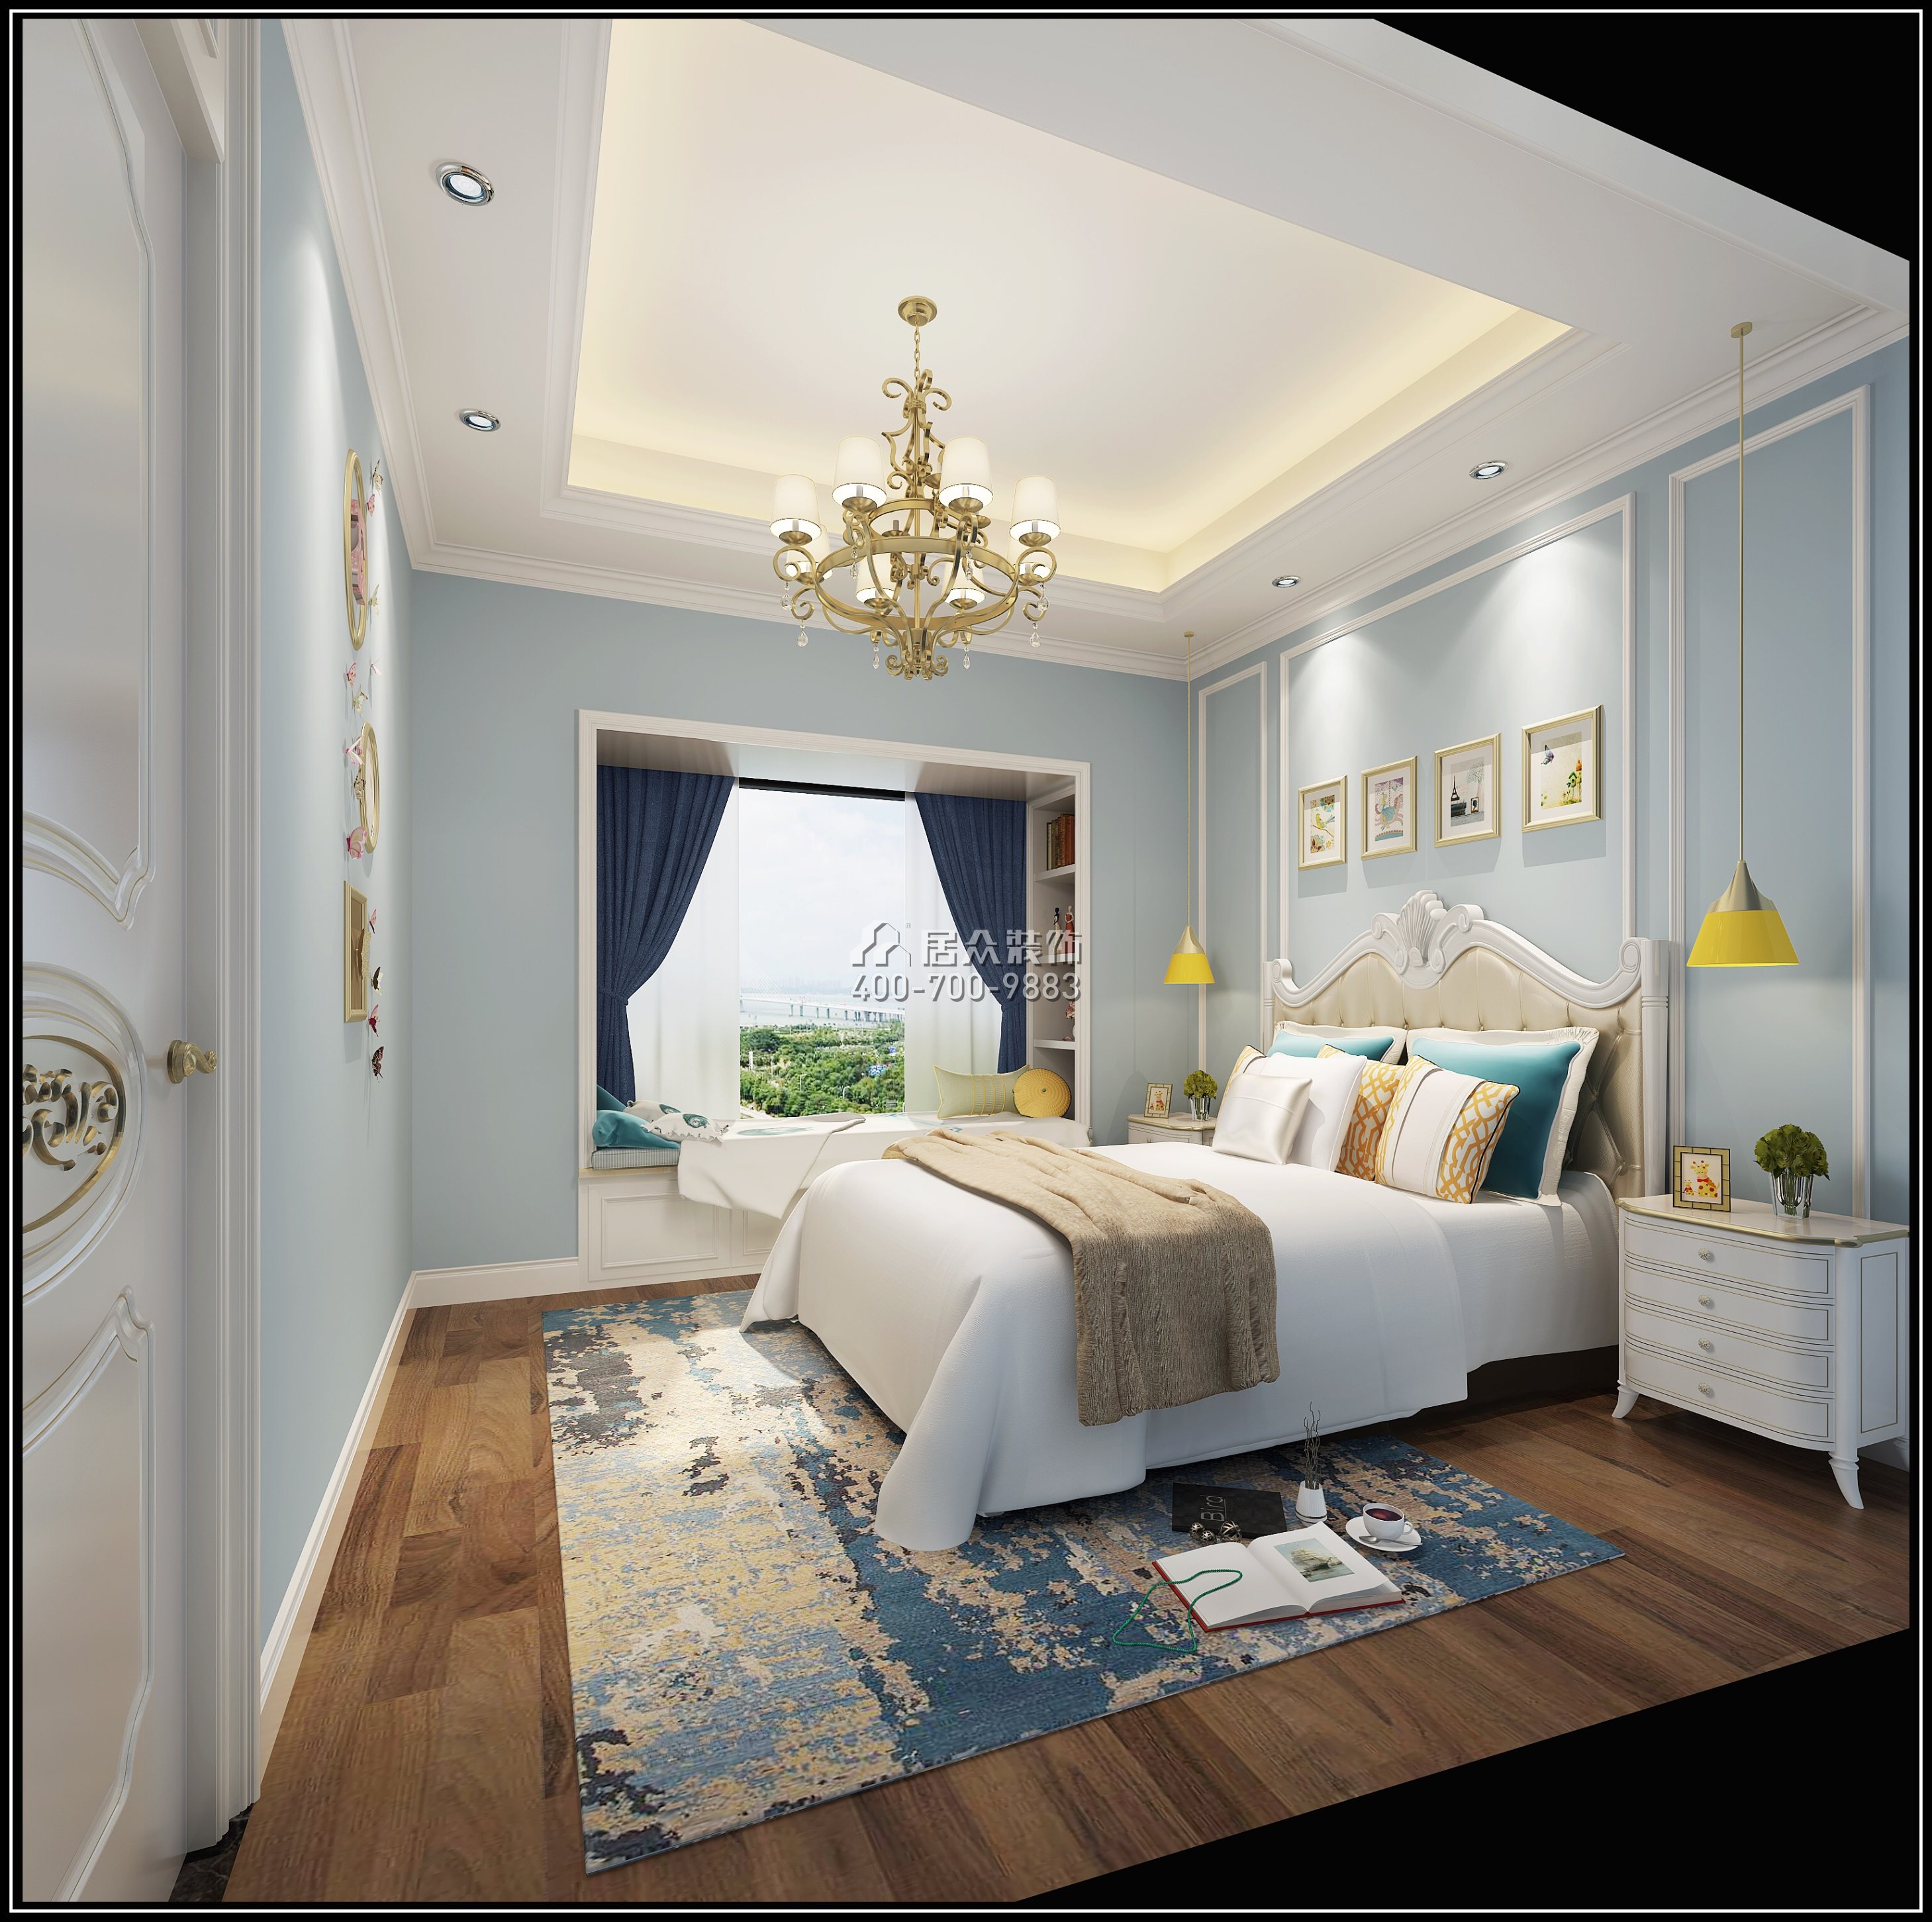 中熙香山美林苑180平方米欧式风格平层户型卧室装修效果图